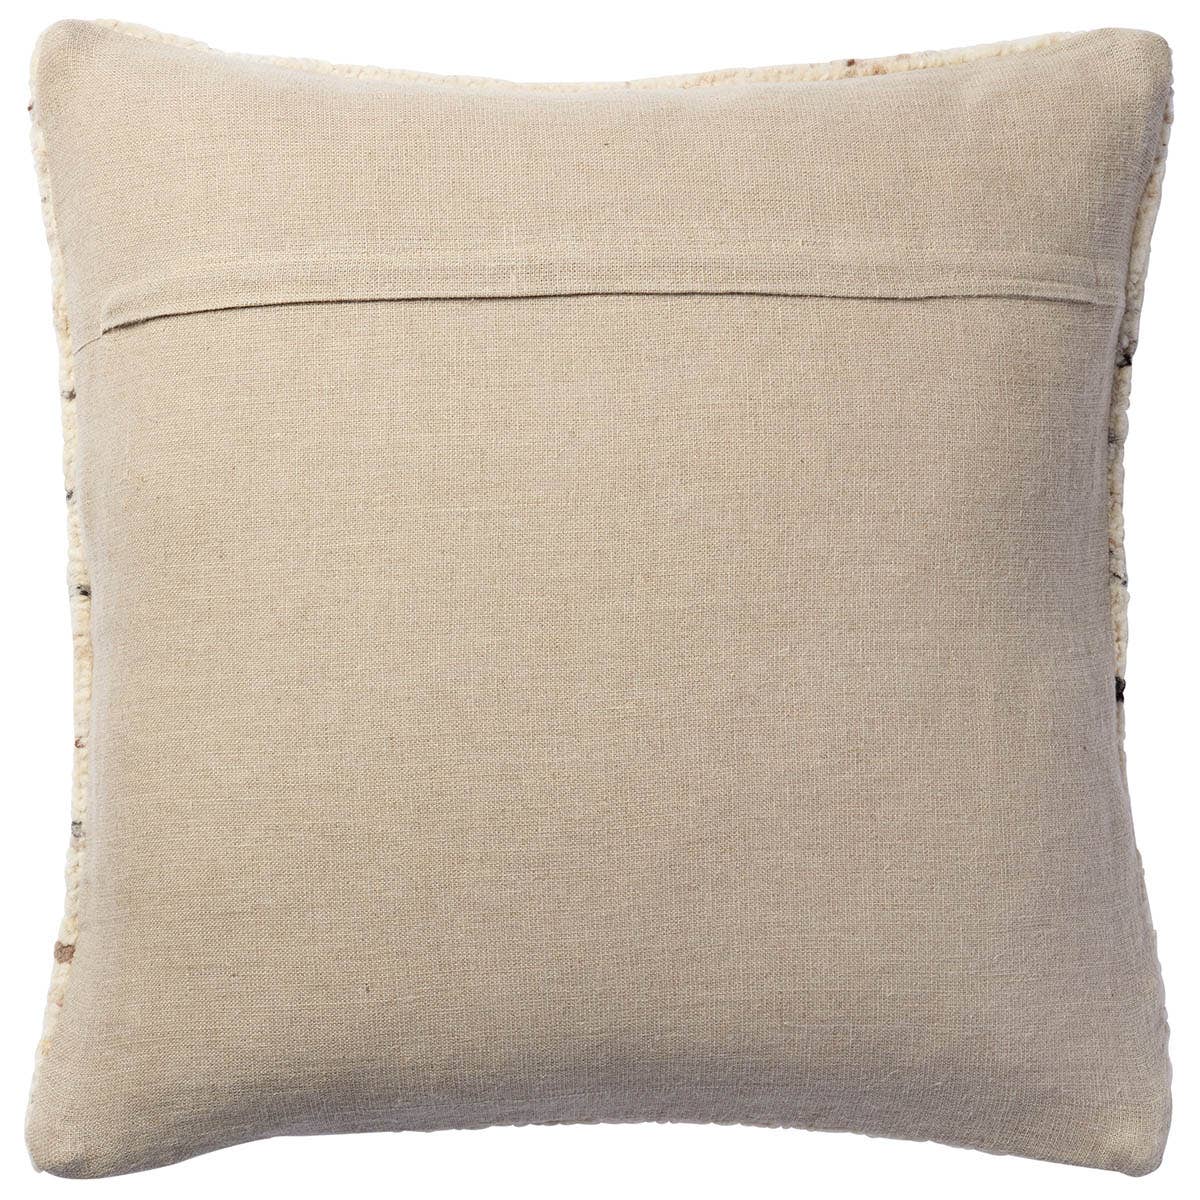 Myla Pillow - StyleMeGHD - Throw Pillows